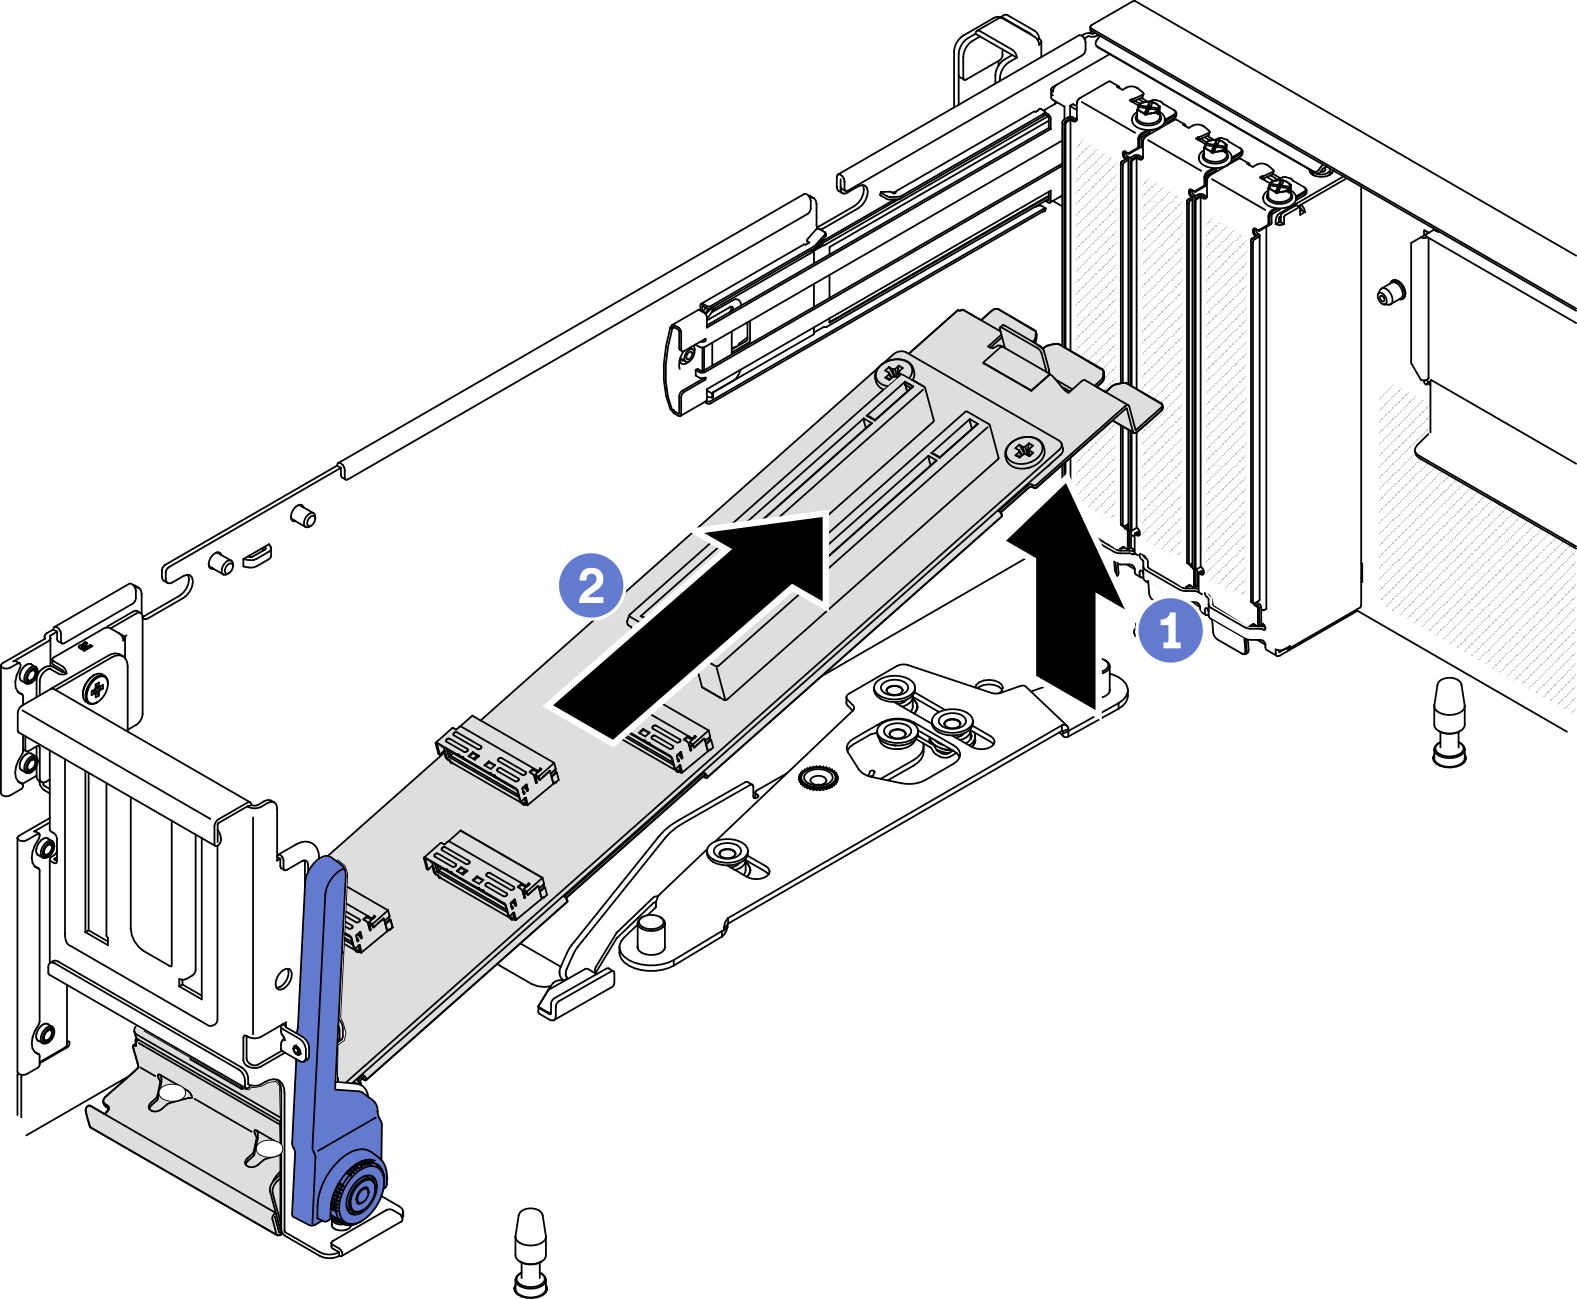 Removing the modulo della scheda di espansione I/O anteriore